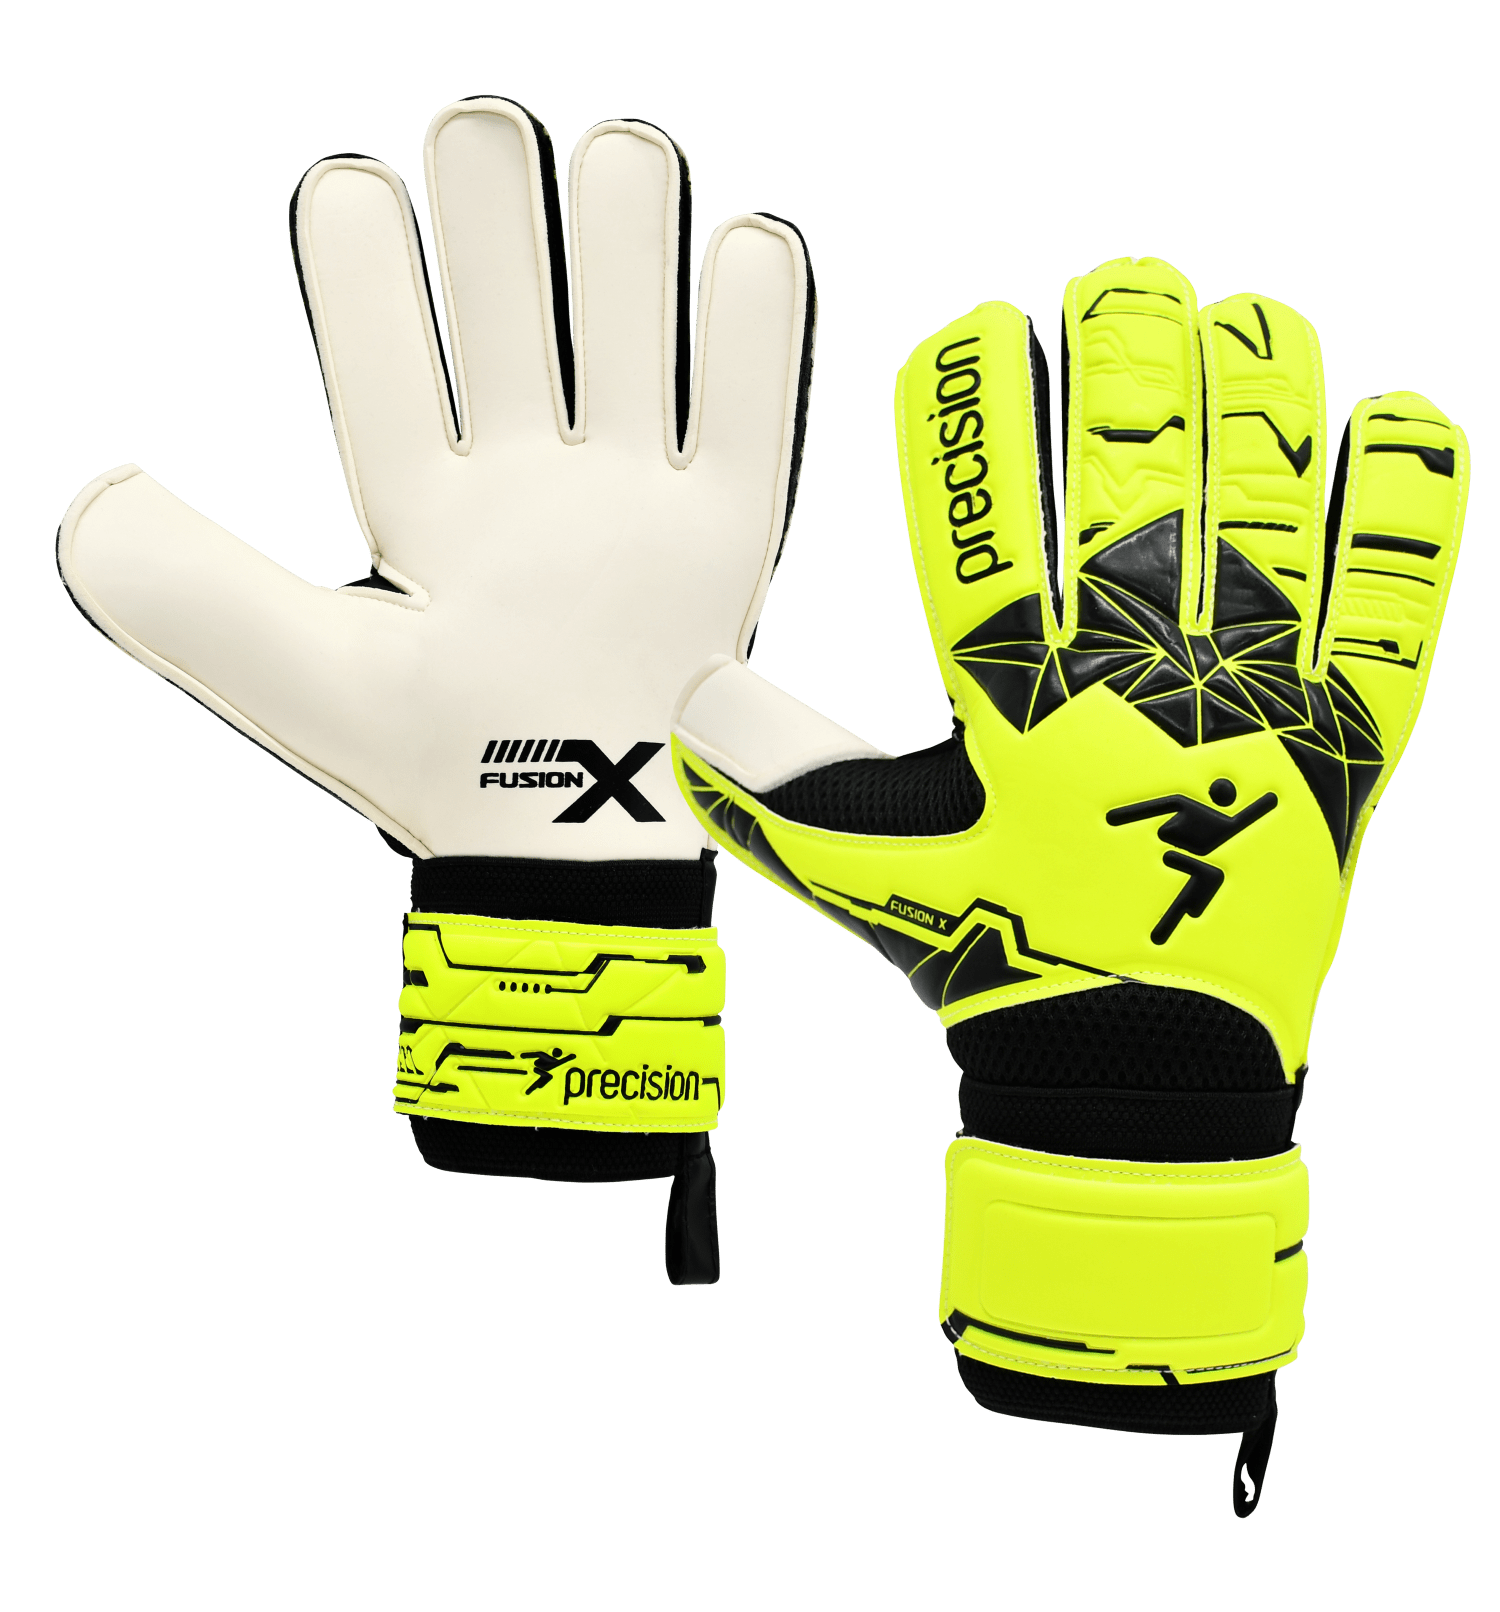 Precision Fusion X Flat Cut Essential GK Gloves